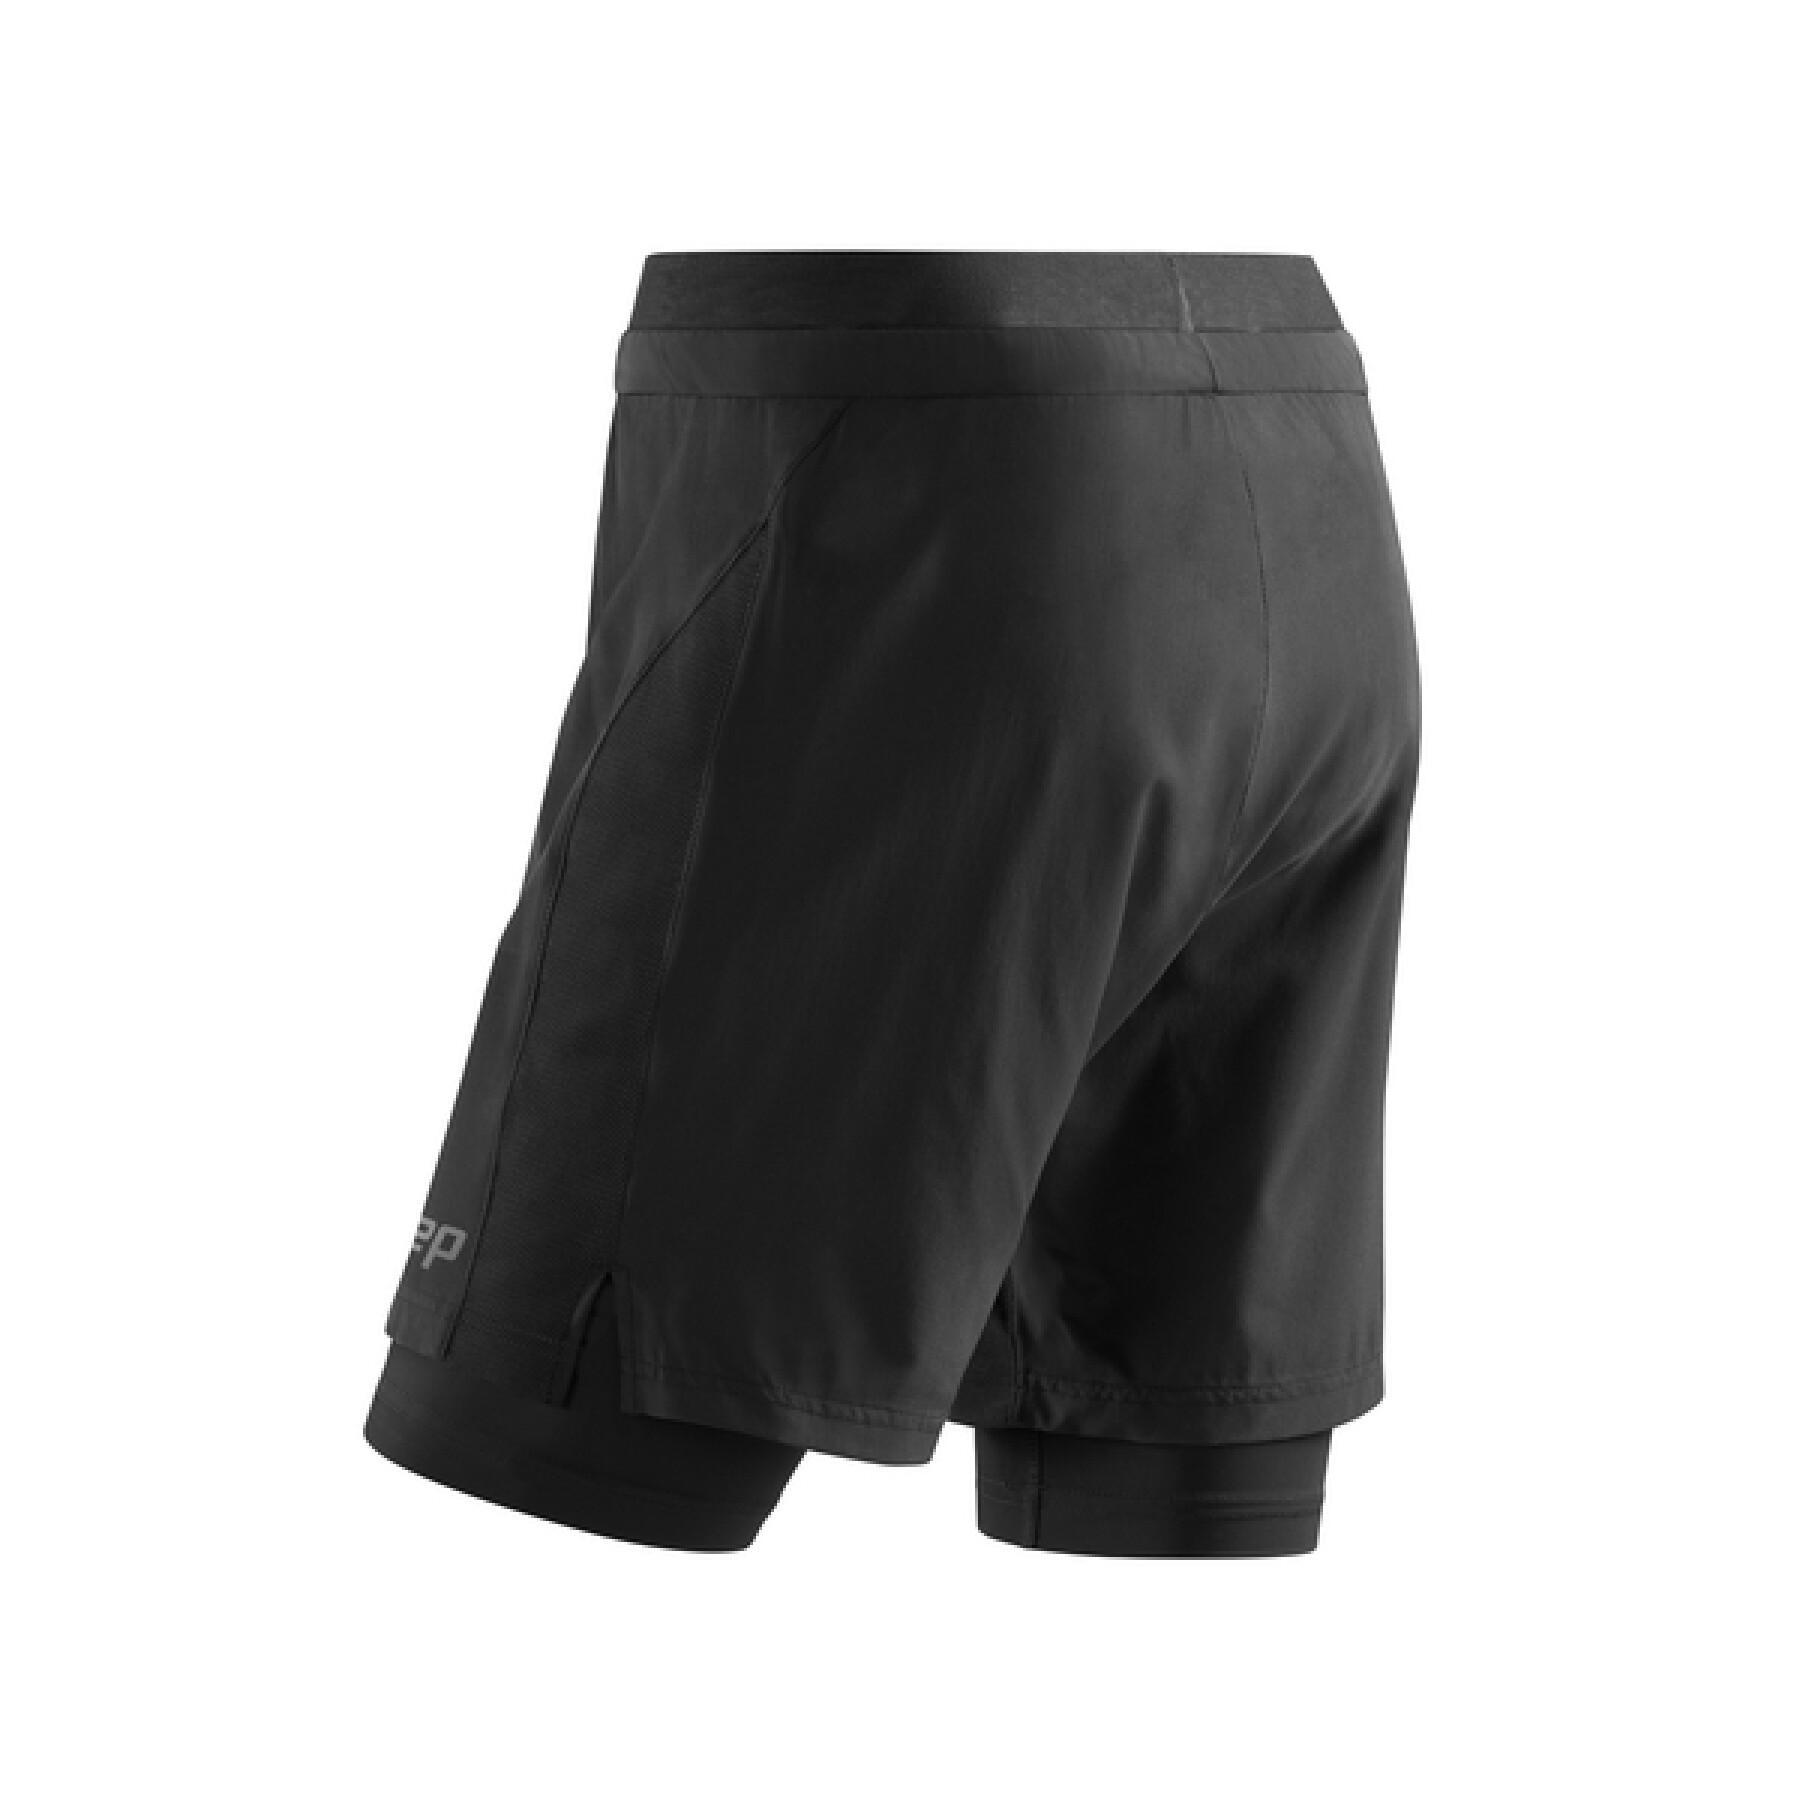 Pantalones cortos de mujer 2en1 CEP Compression Training